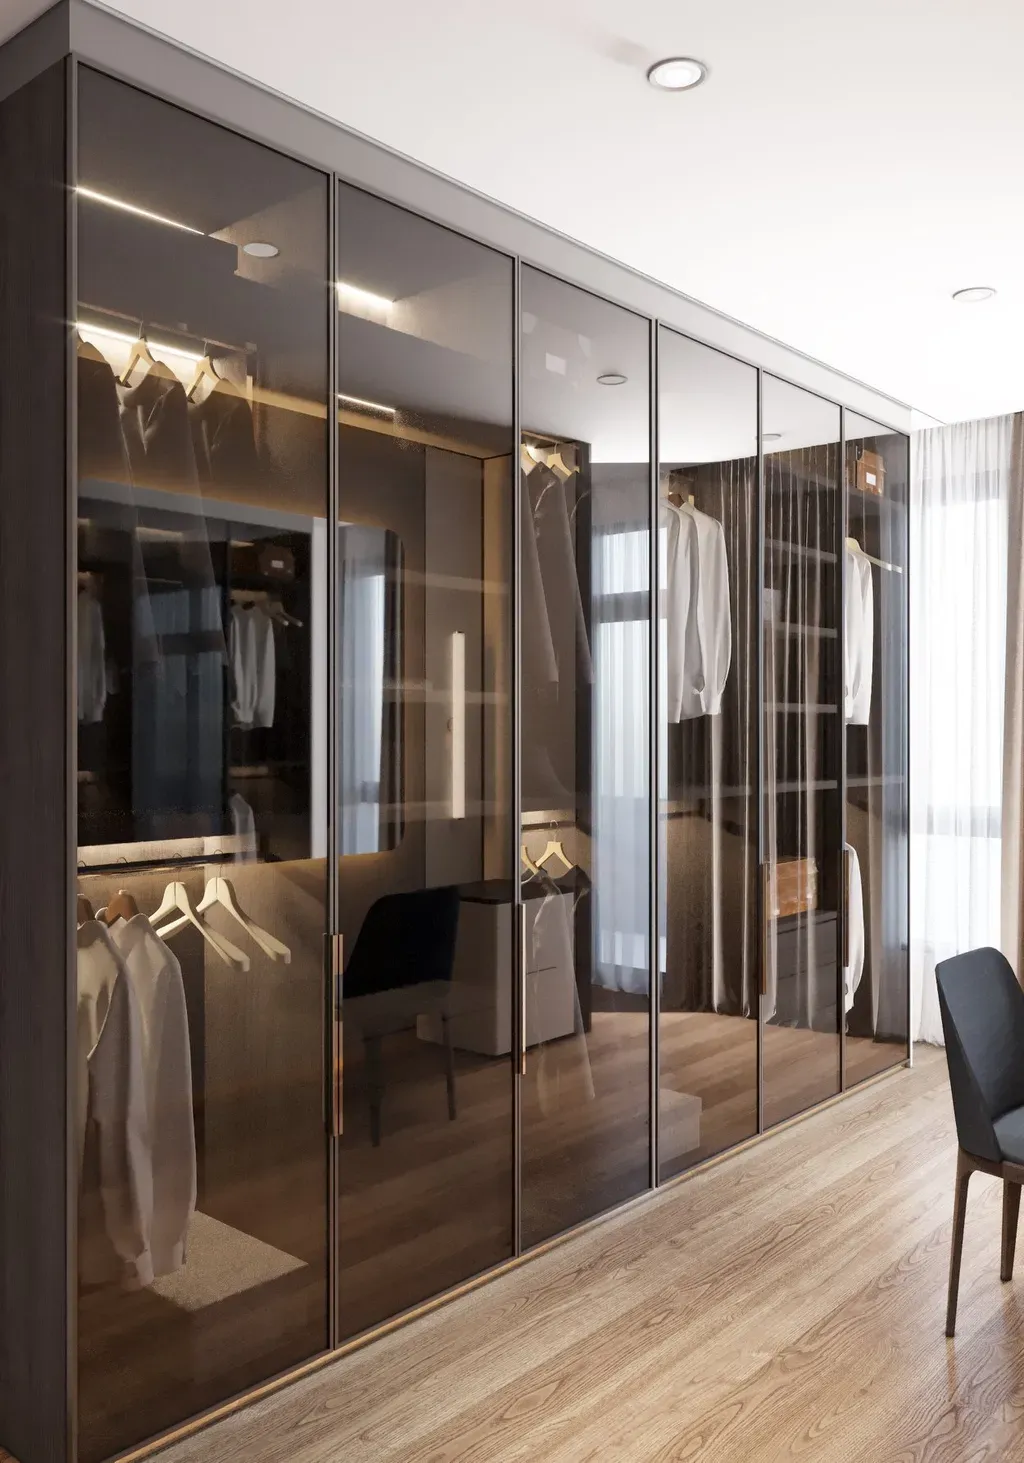 Phòng thay đồ - Concept căn hộ - Phong cách Neo Classic & Minimalism số 2  | Space T